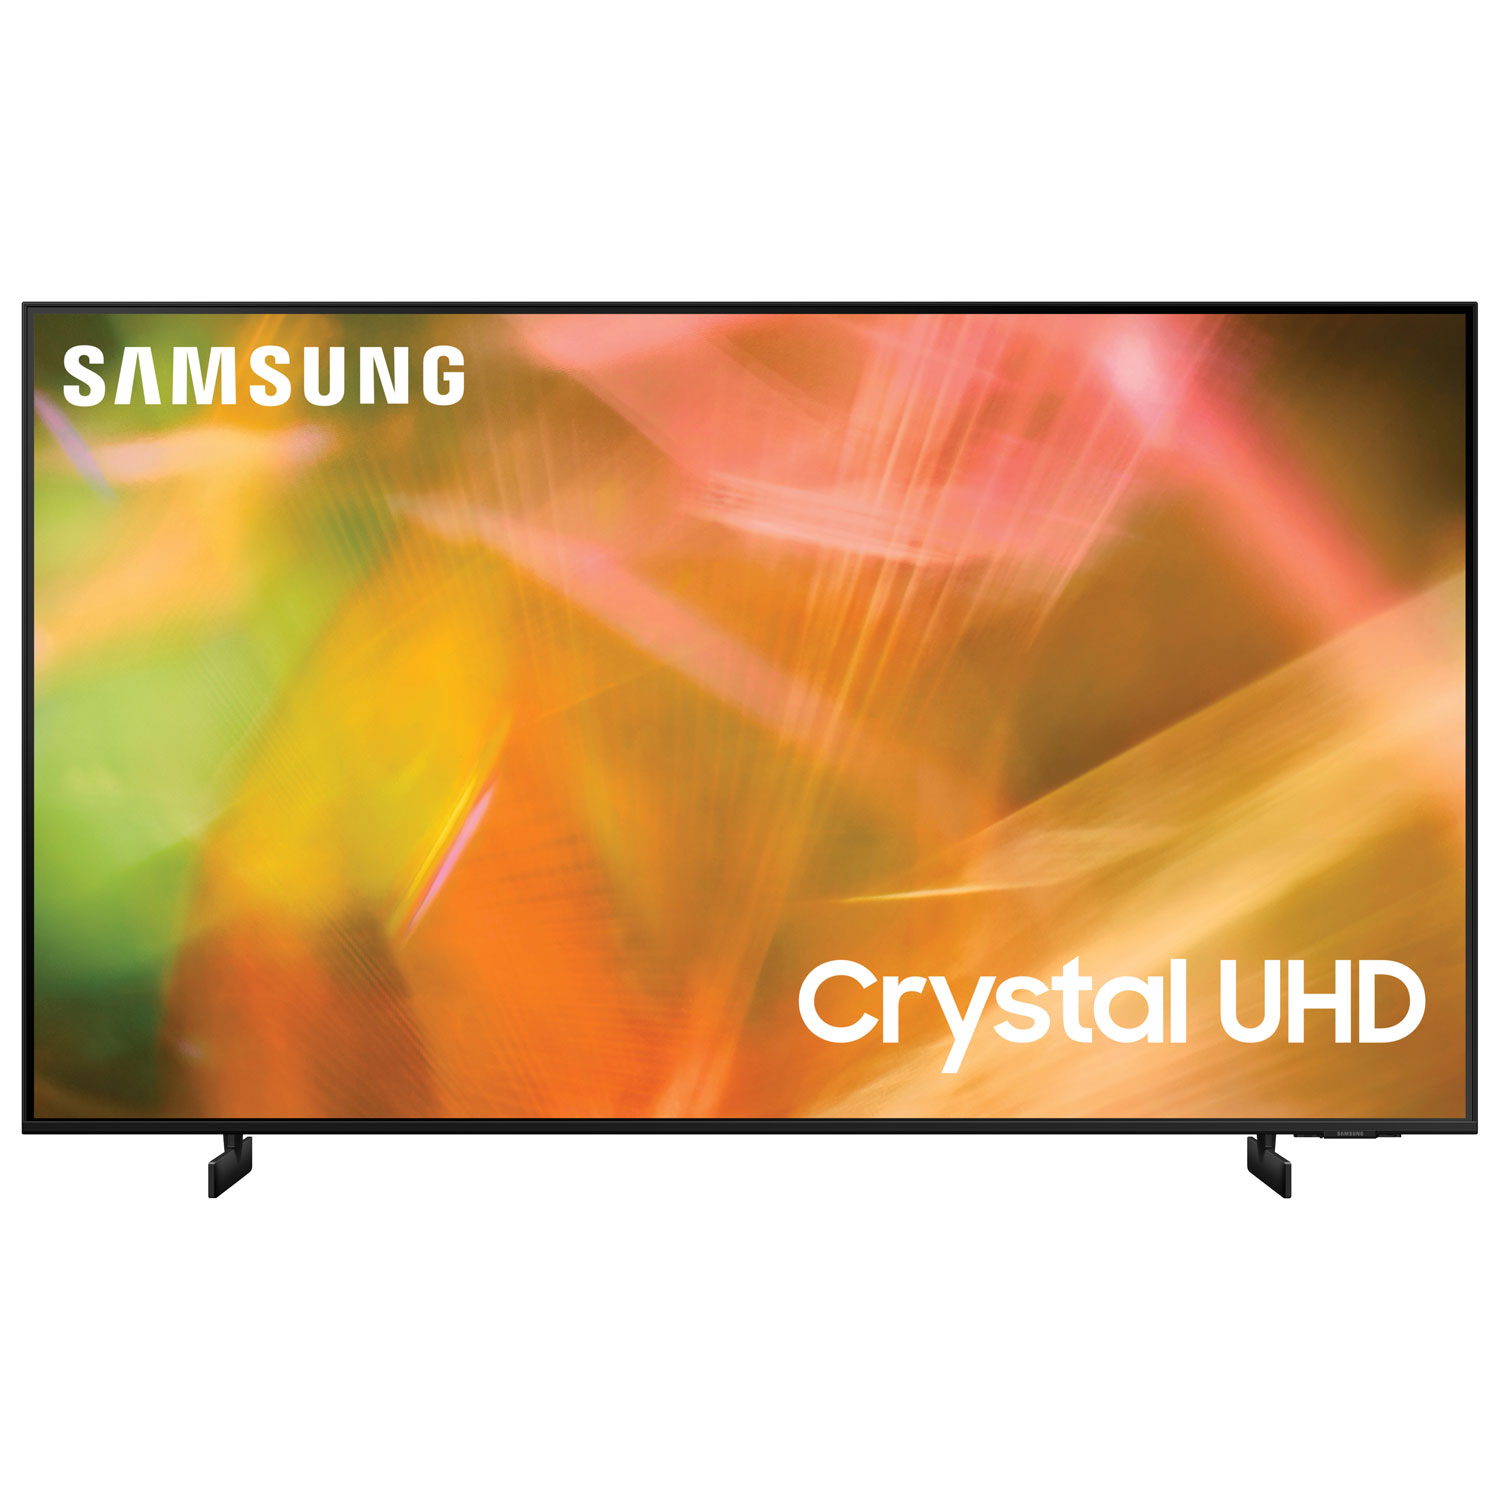 Samsung 43" 4K UHD HDR LED Tizen Smart TV (UN43AU8000FXZC) - 2021